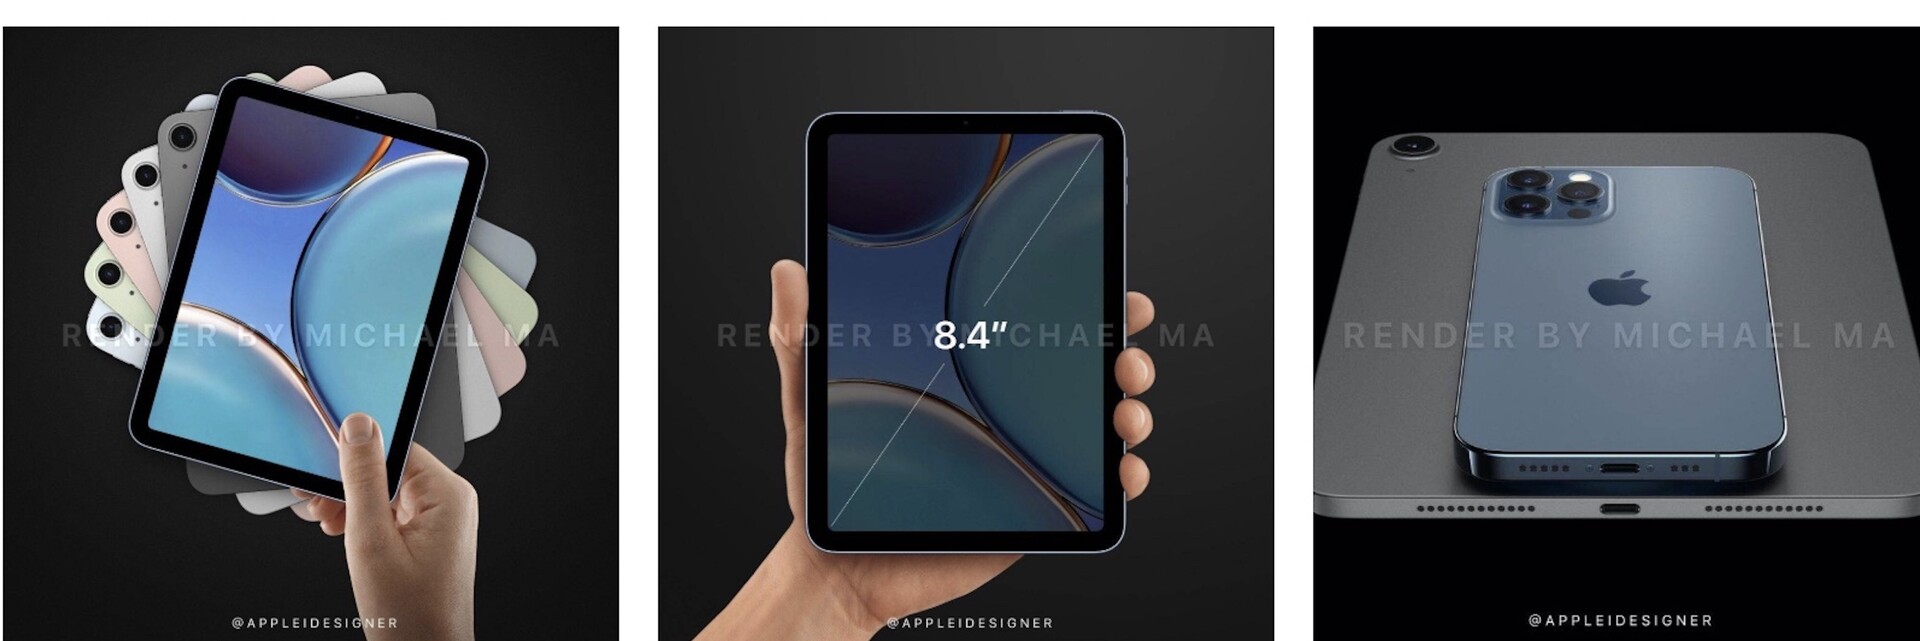 新闻资讯|iPad mini 概念想象重新设计，配备更大的8.4英寸Liquid Retina显示屏